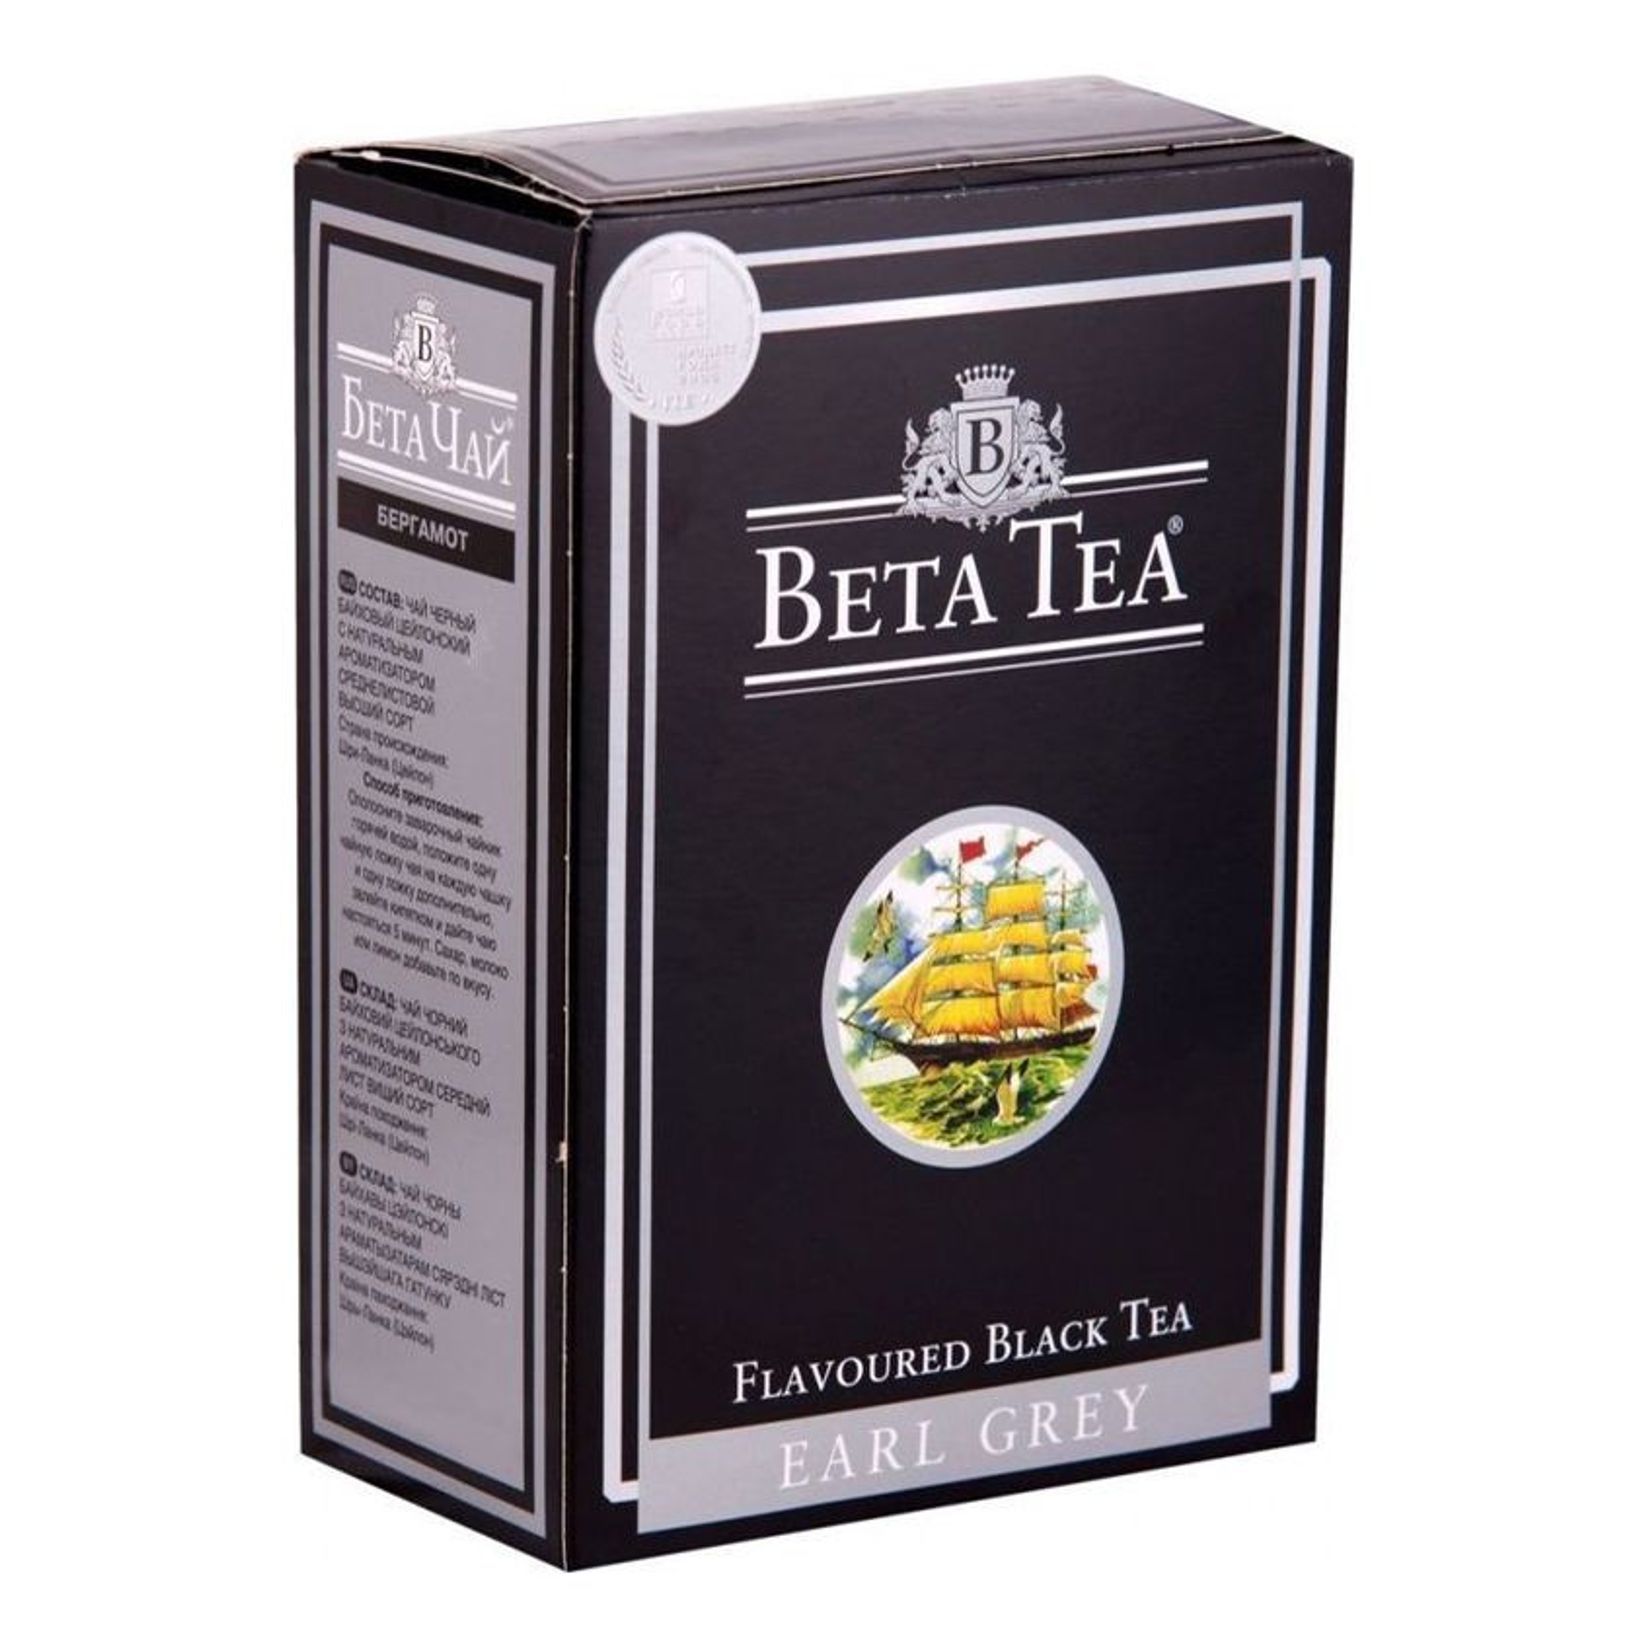 Чай Beta Tea бергамот, 100г. Чай черный листовой Beta Tea бергамот 100 г. Beta Earl Grey бергамот черный чай 250гр. Чай черный Beta Earl Grey 100гр. Купить чай теа